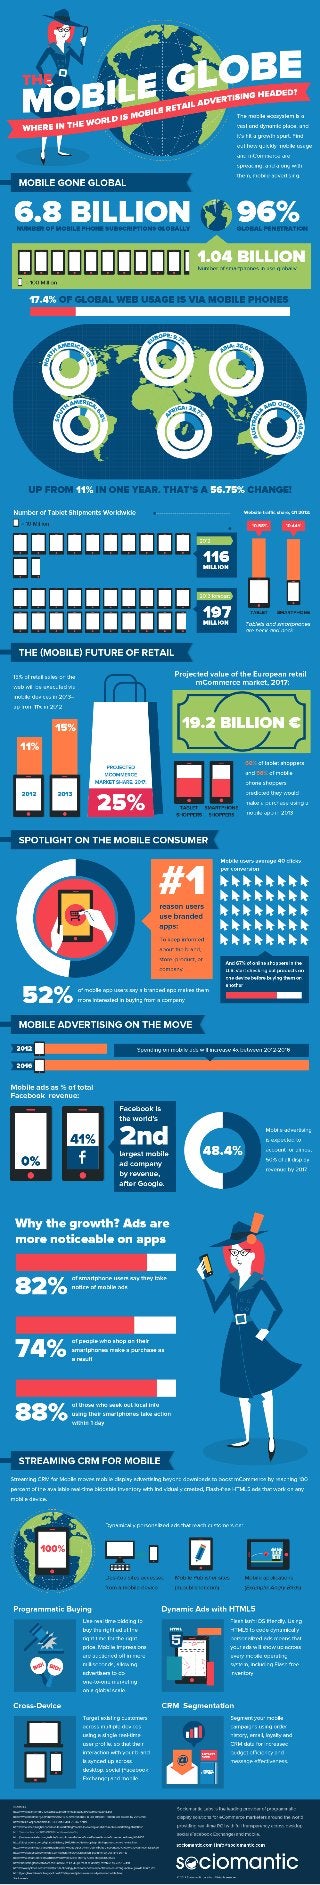 Infographie: Publicité Mobile et M-Commerce